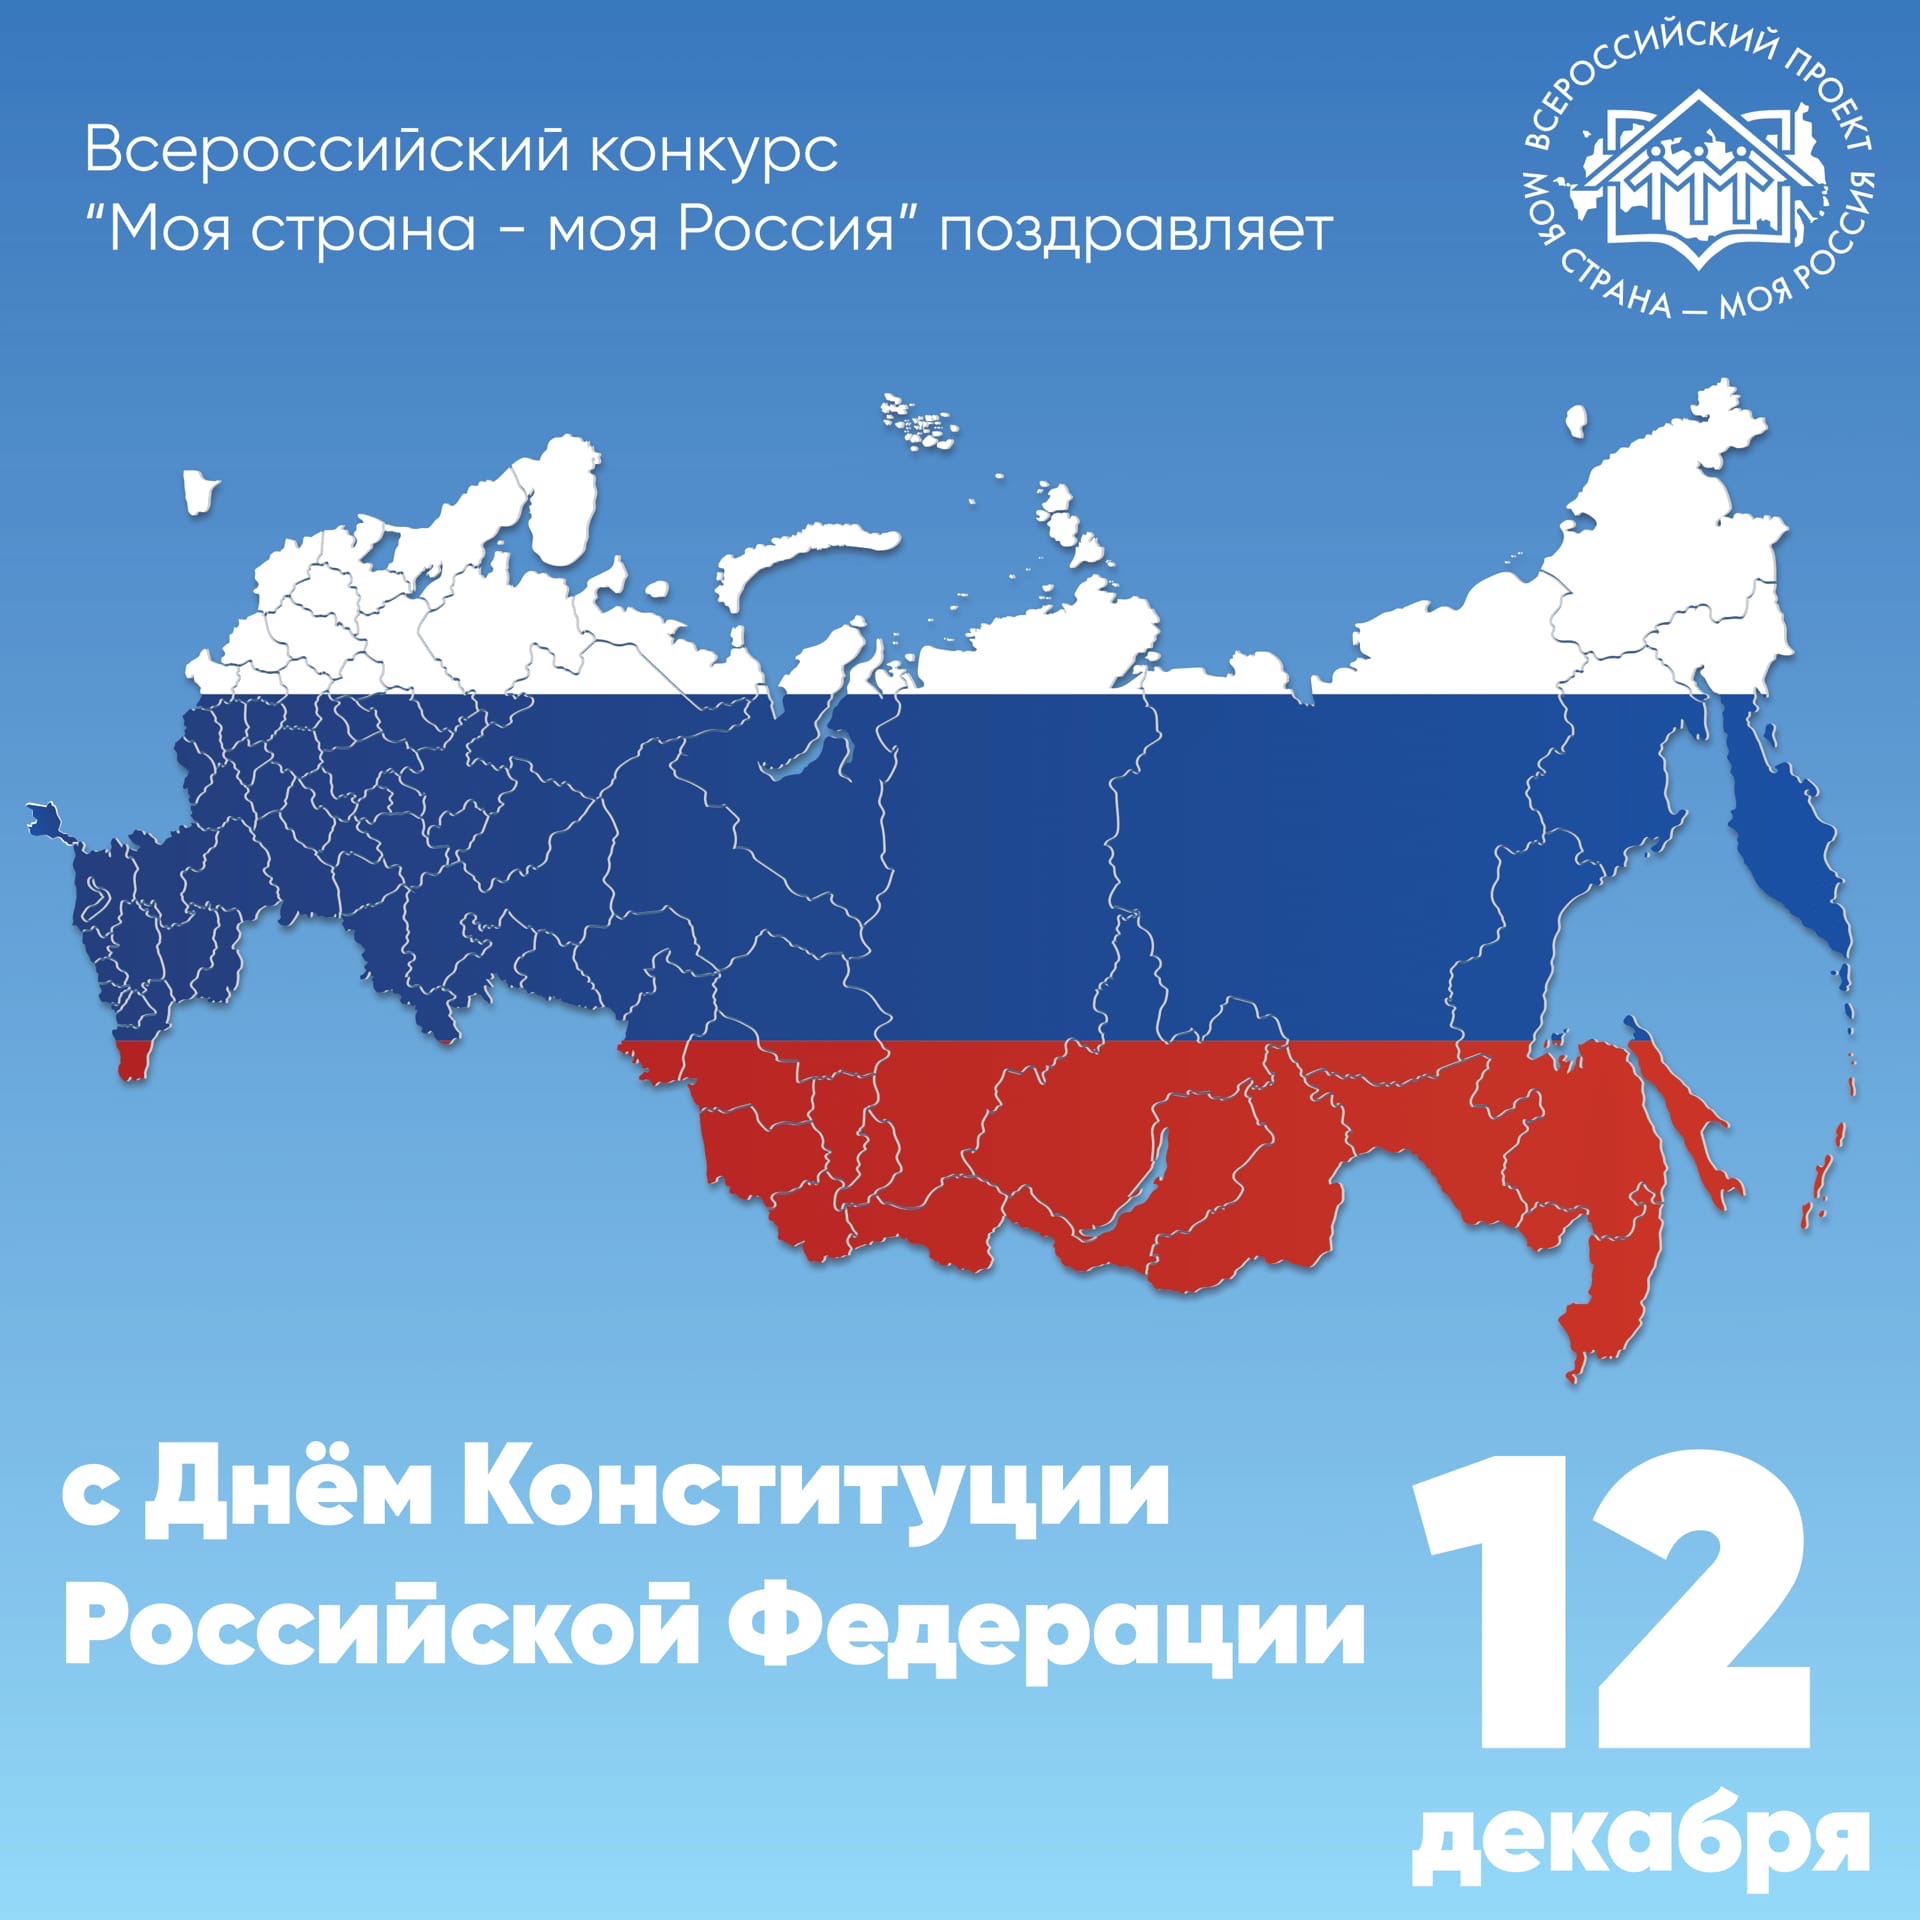 Всероссийский конкурс «Моя страна - моя Россия» поздравляет всех россиян с Днём Конституции Российской Федерации!